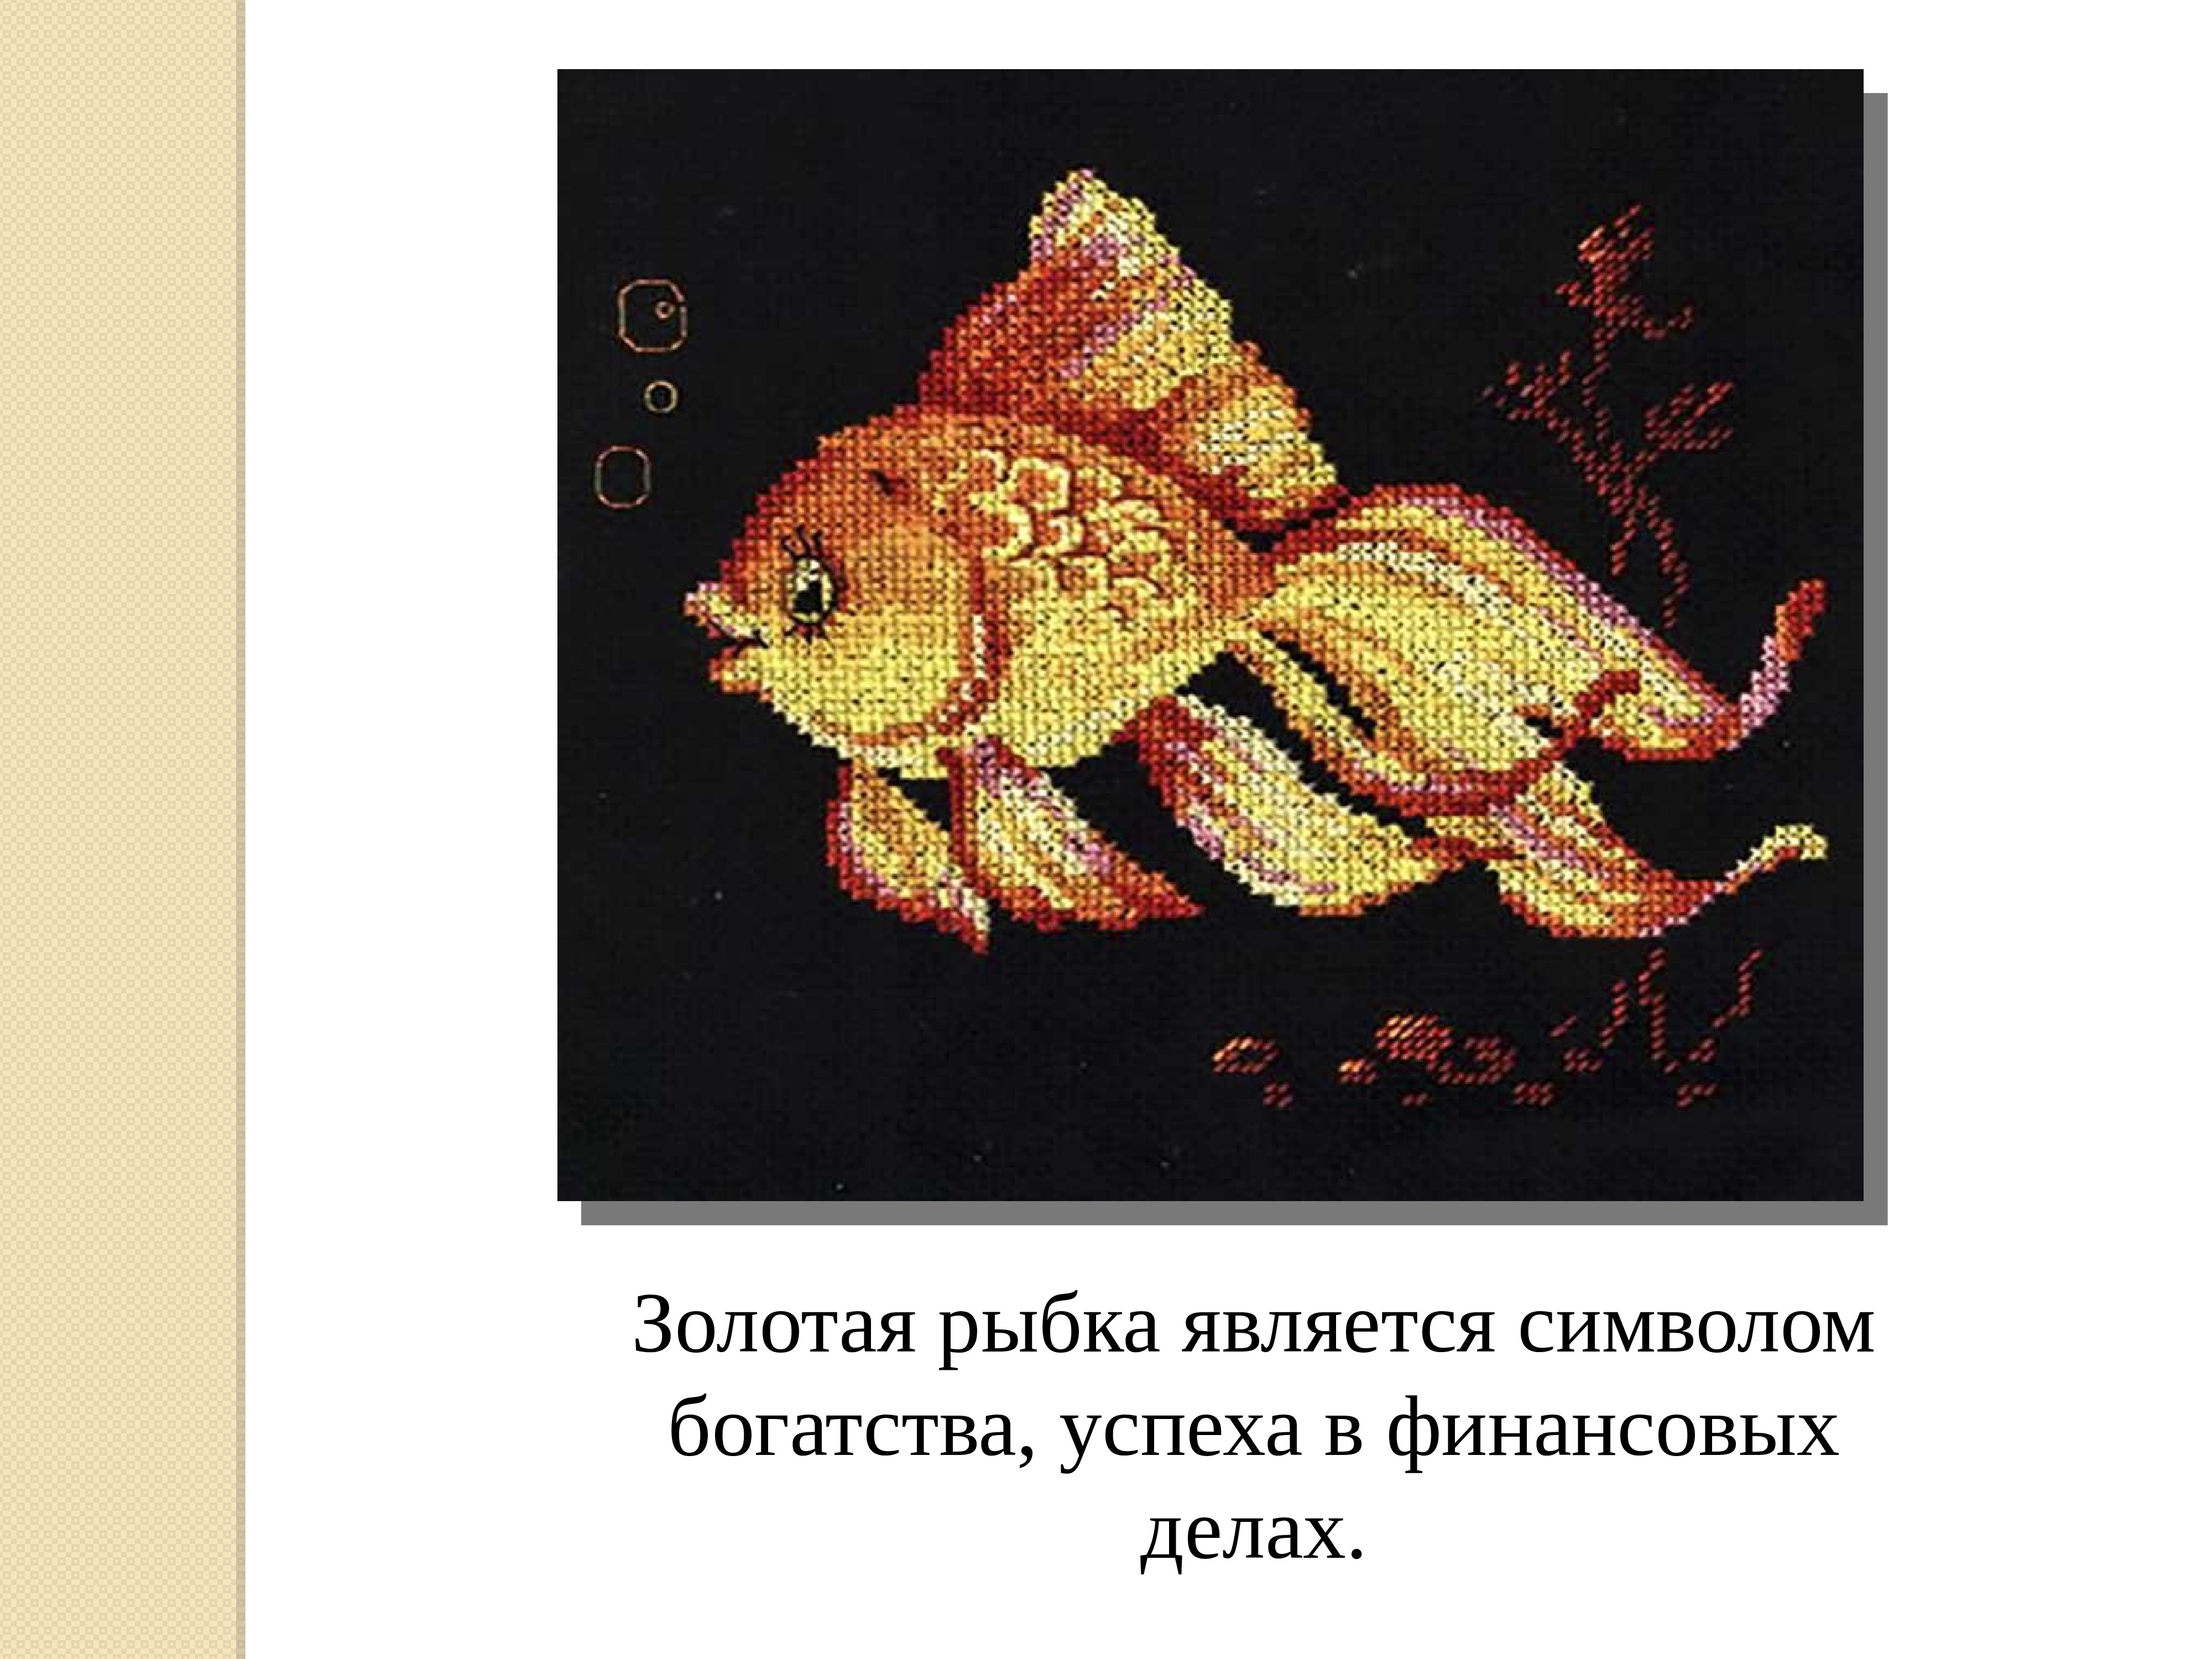 Код богатства рыбы. Вышивка с символом богатства. Золотая рыбка символ богатства. Символ достатка и благополучия. Золотая рыбка на удачу.